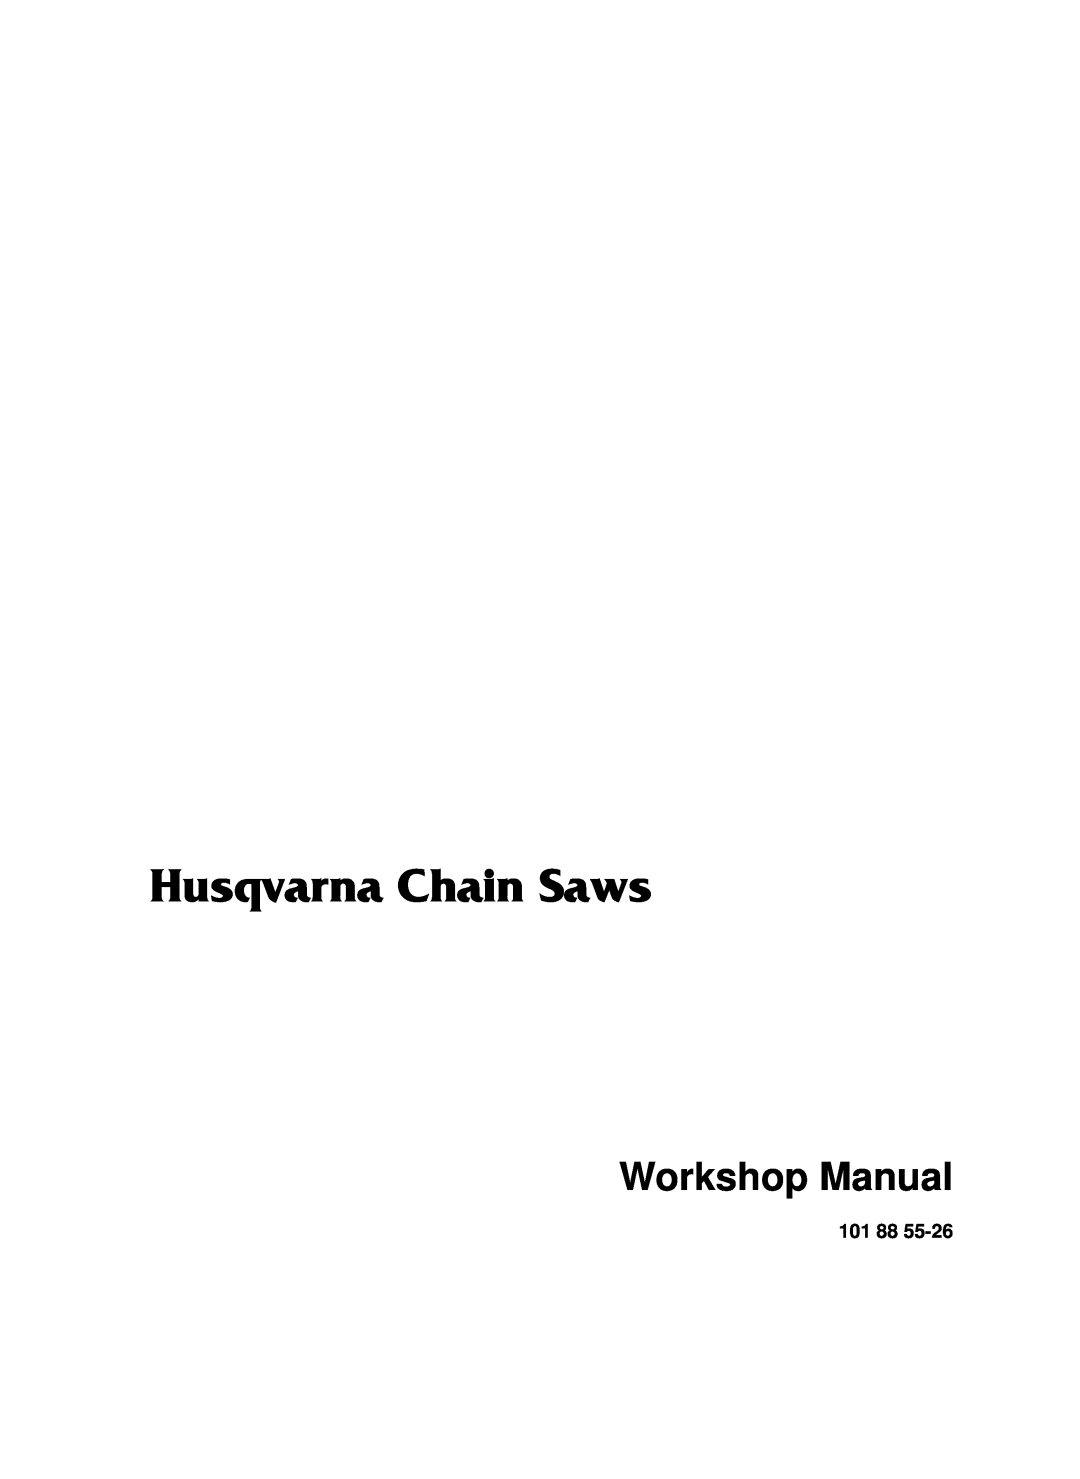 Husqvarna 965030296, 965030298, 1018855-26 manual Husqvarna Chain Saws, Workshop Manual 